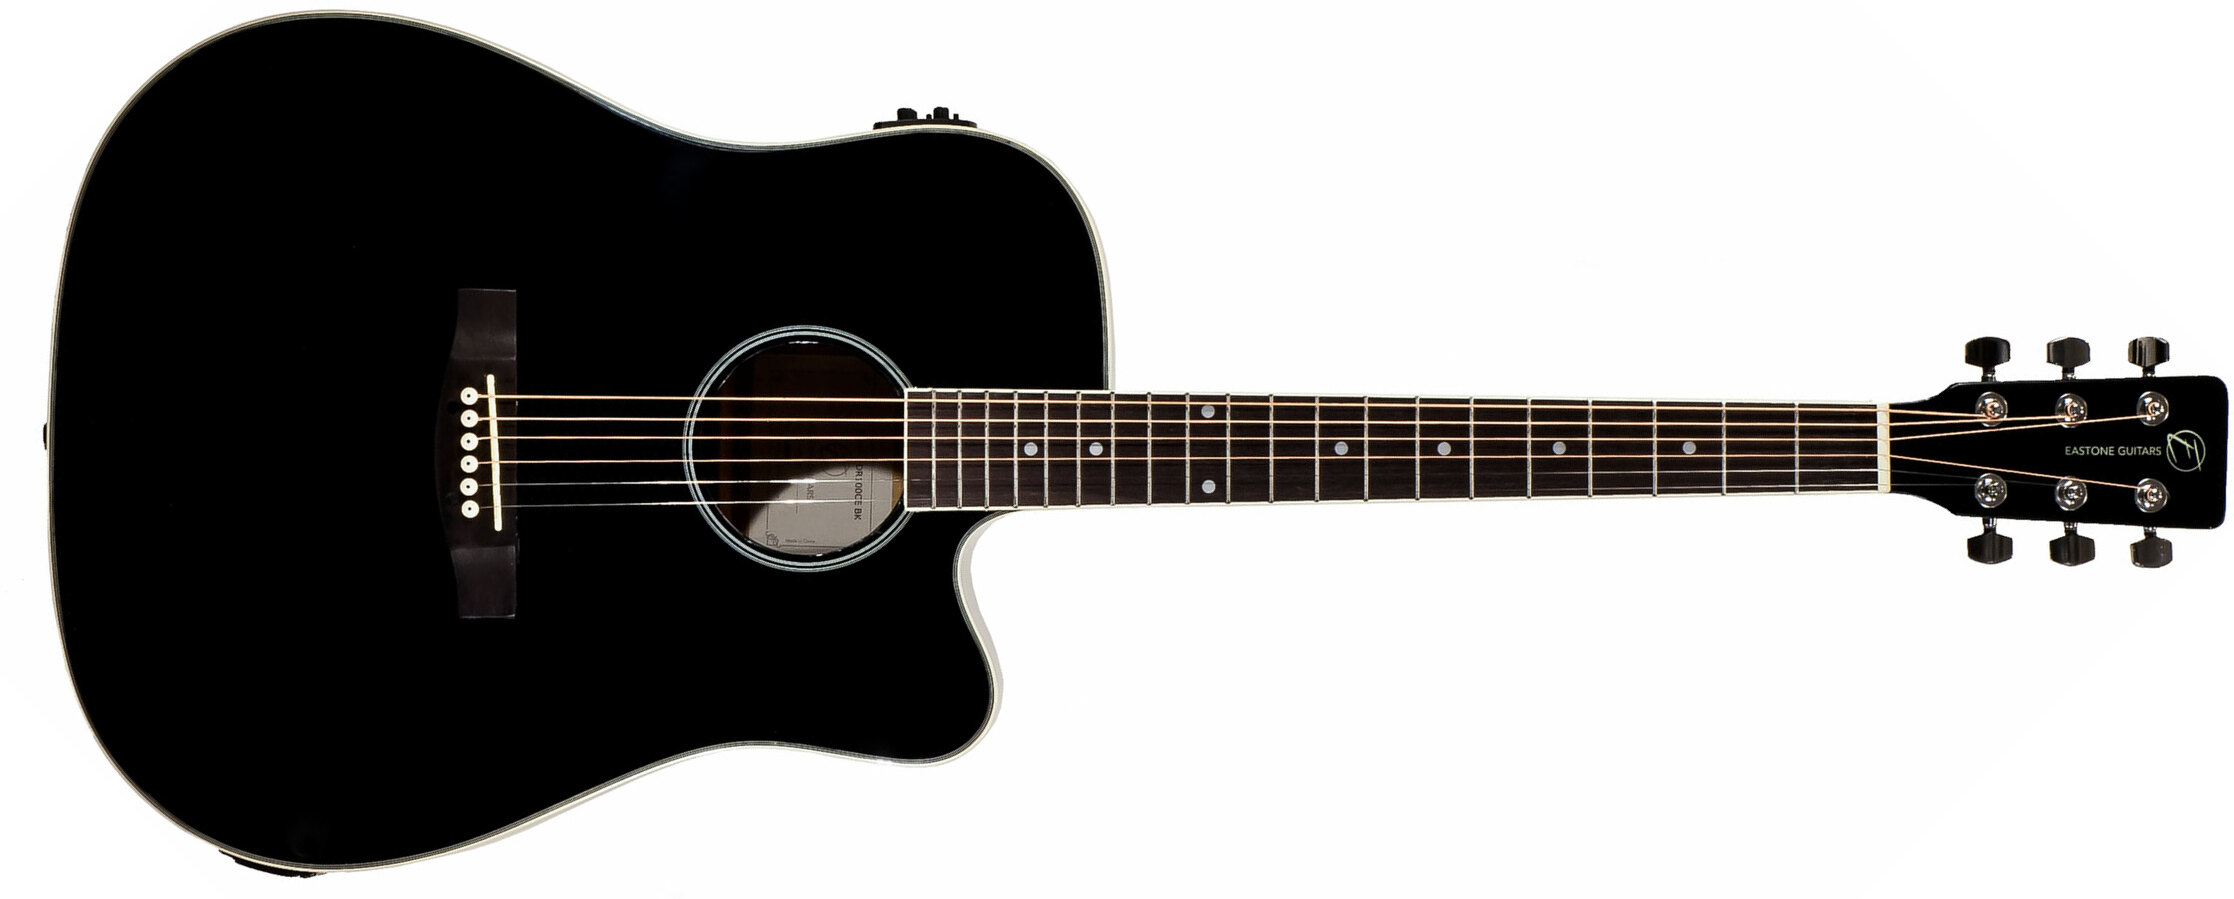 Eastone Dr100ce-blk Dreadnought Cw Epicea Okuman - Black - Electro acoustic guitar - Main picture